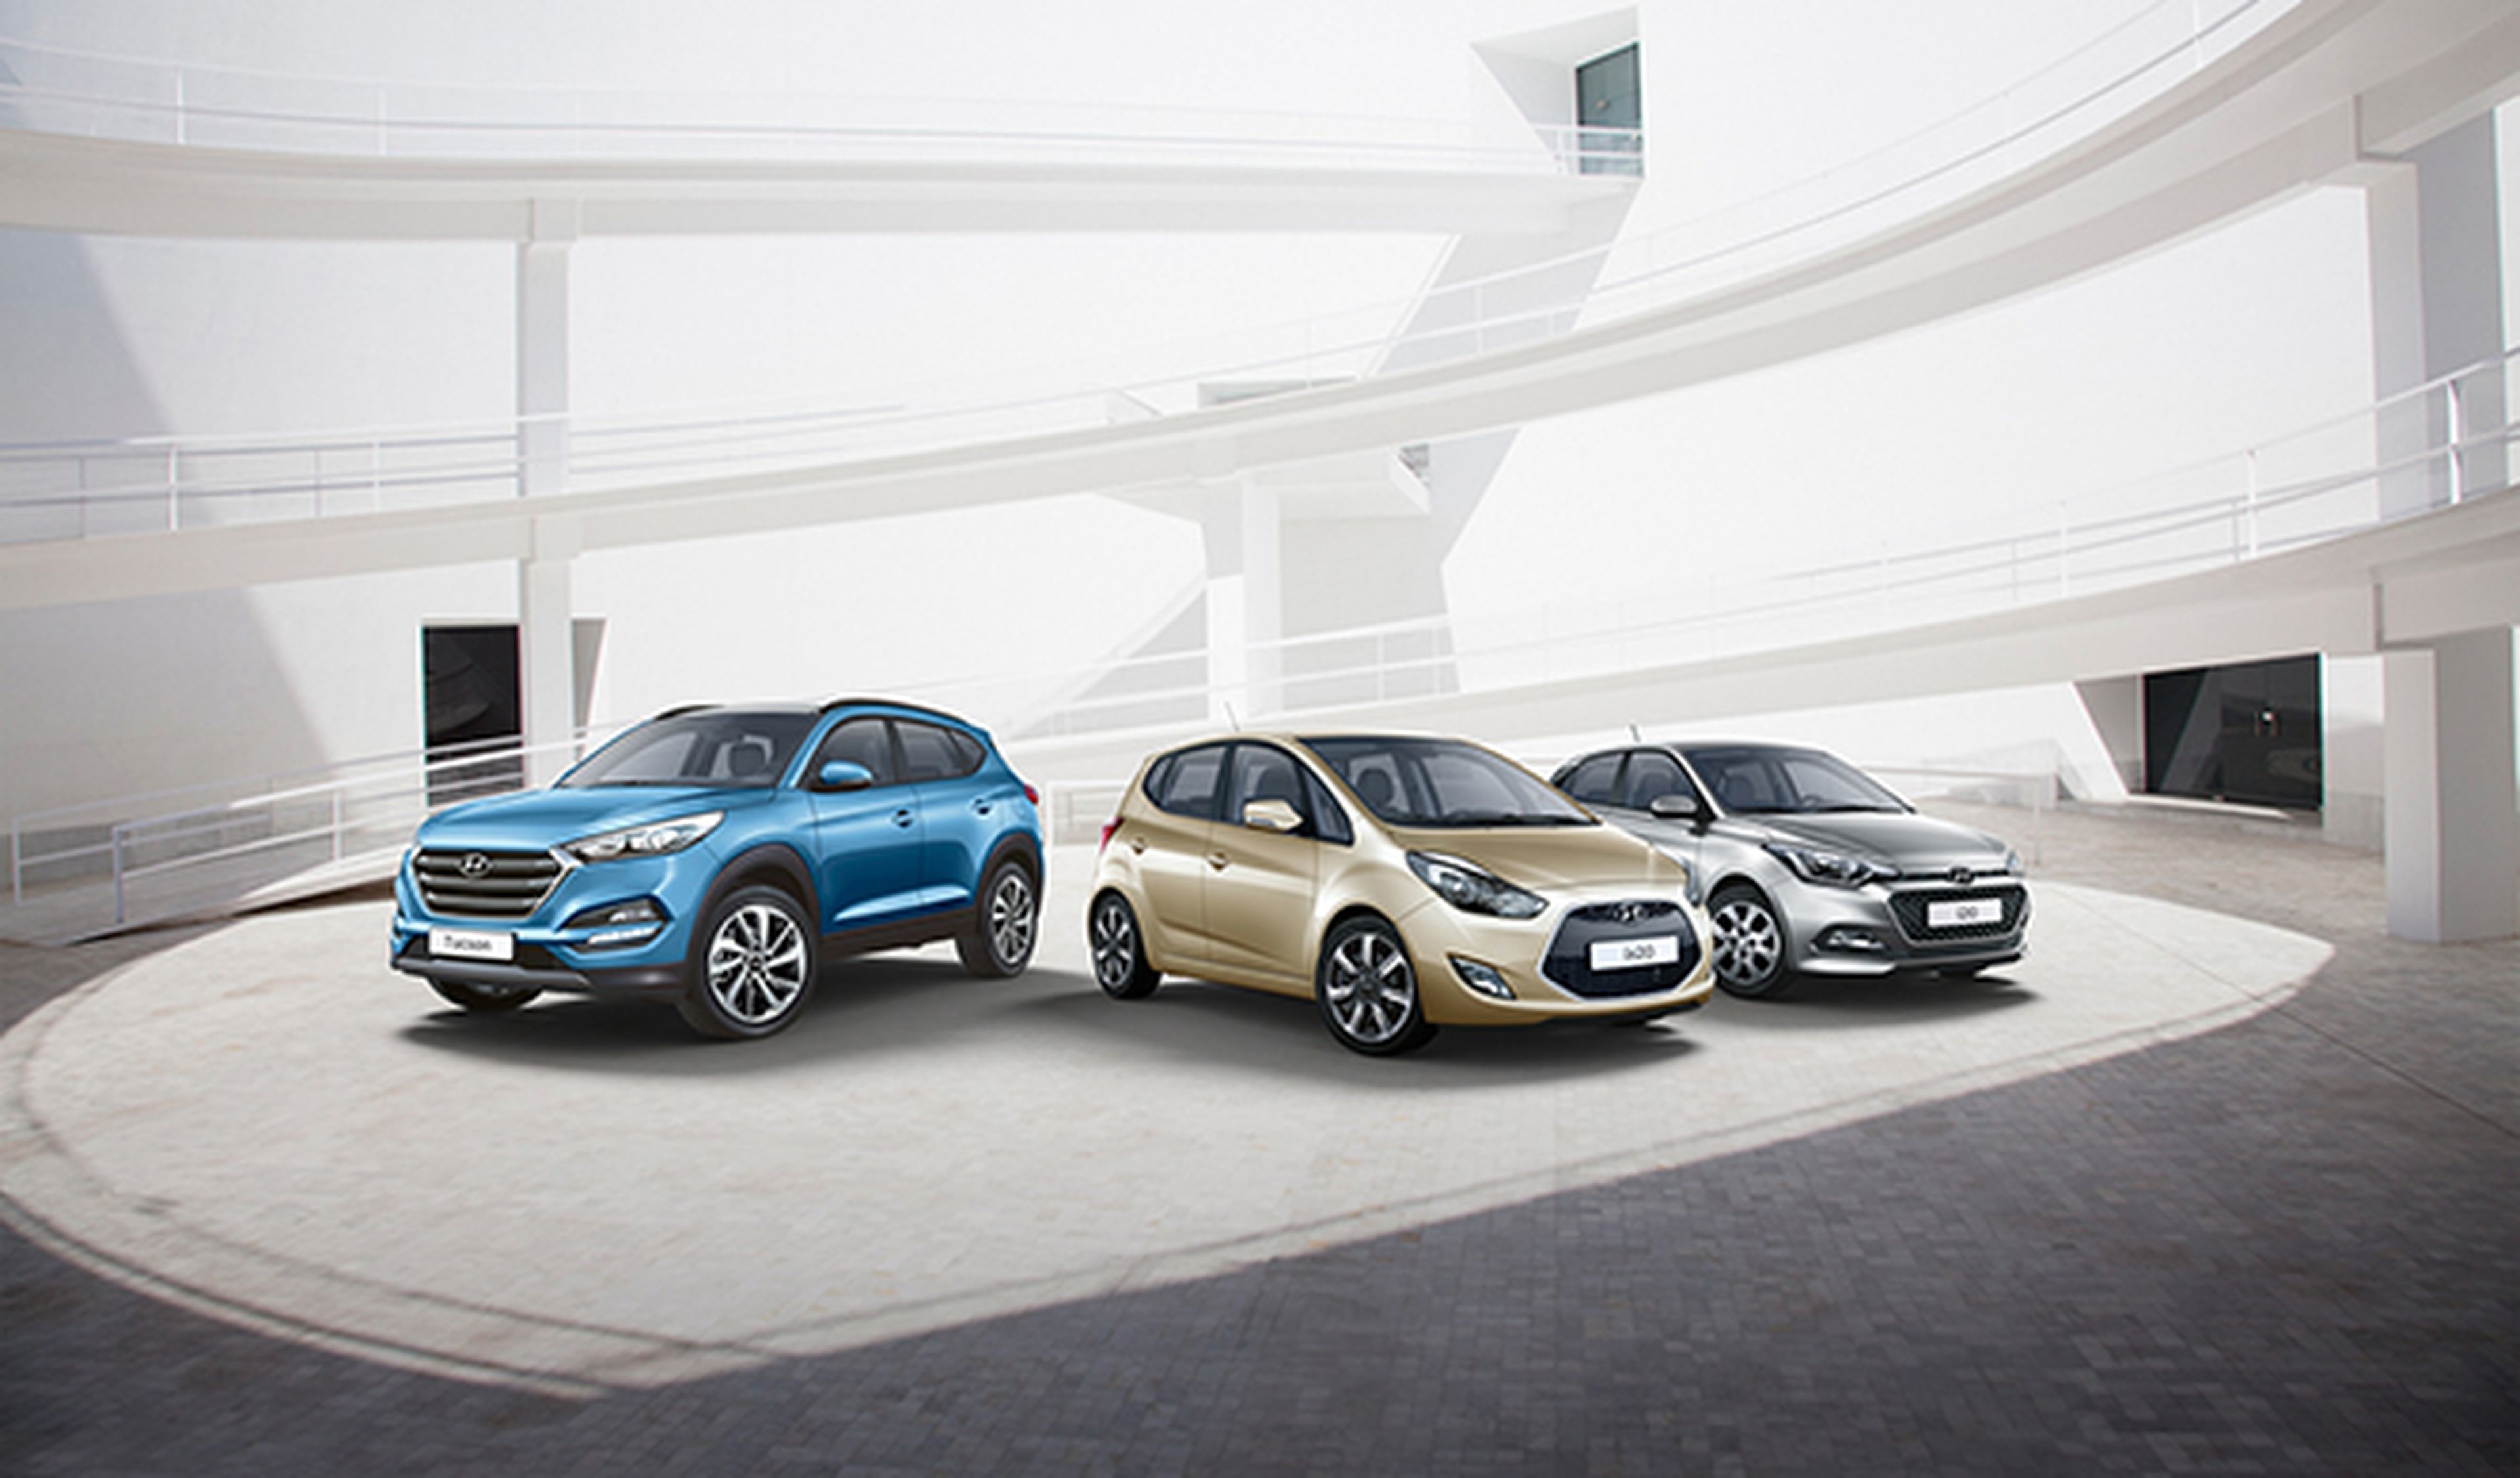 Hyundai celebra 25 años en España con 5 ediciones únicas